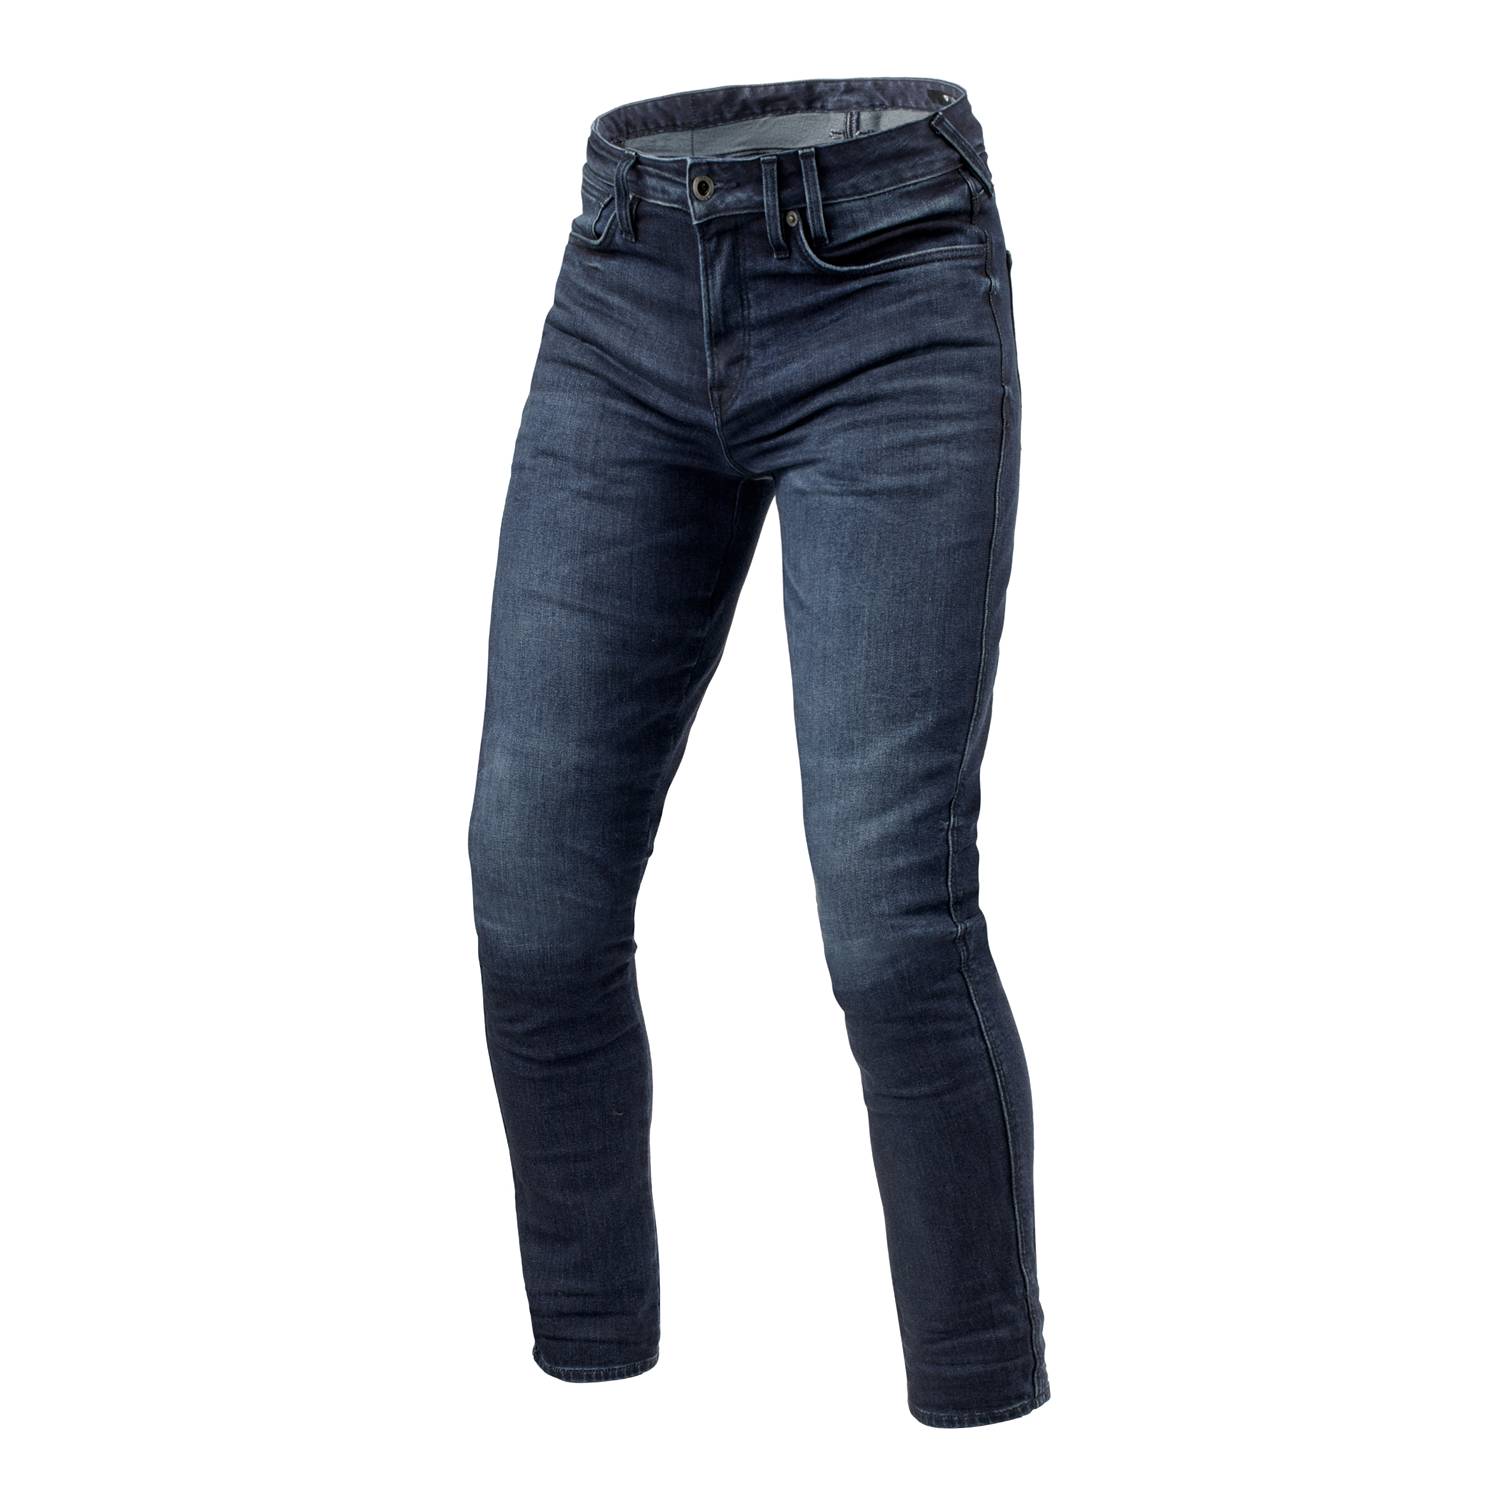 Image of REV'IT! Jeans Carlin SK Dark Blue Used L34 Motorcycle Jeans Size L34/W32 EN